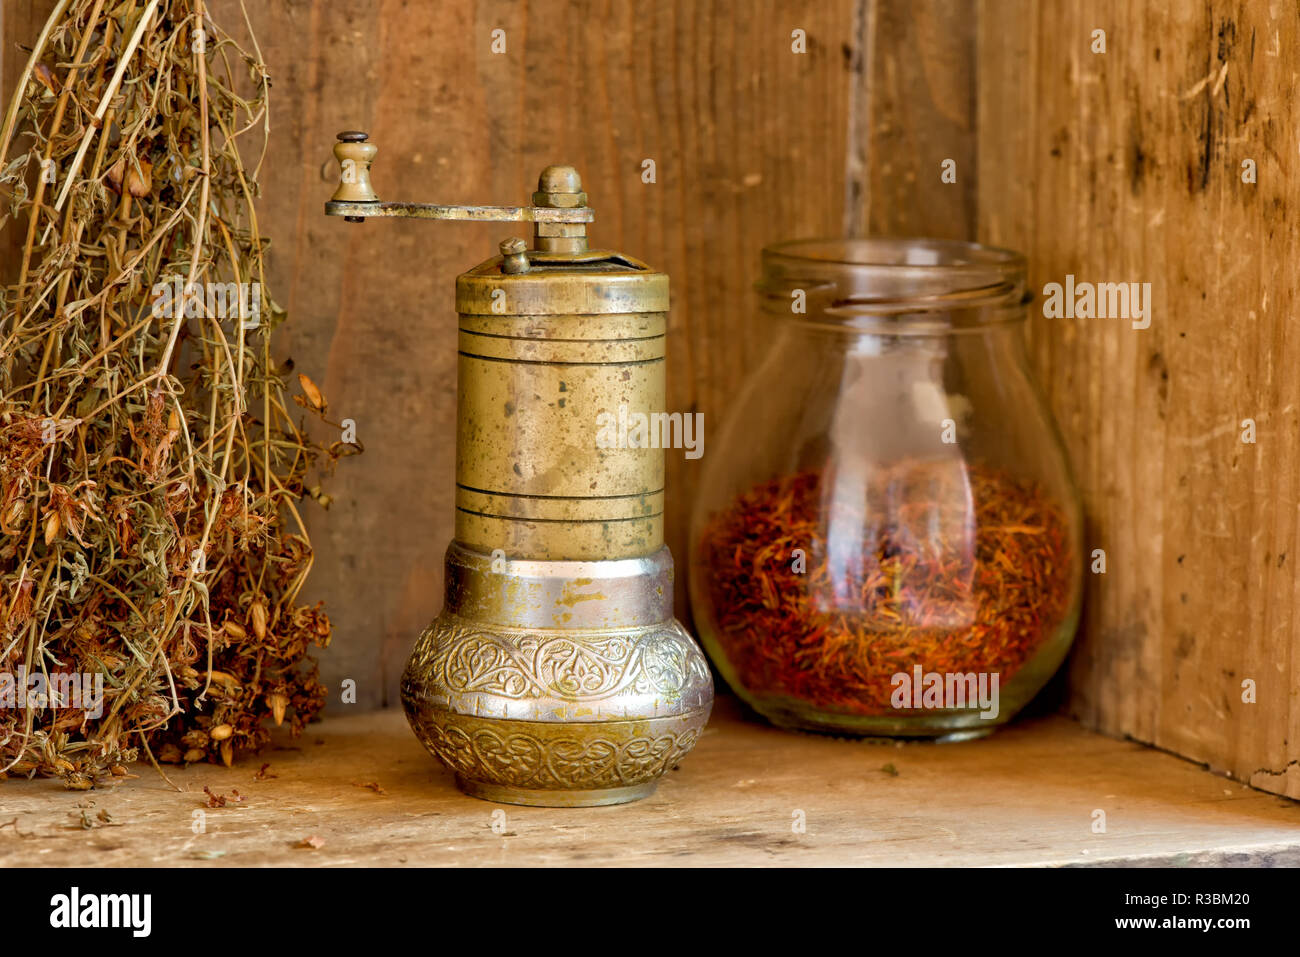 https://c8.alamy.com/comp/R3BM20/vintage-manual-spice-grinder-on-wooden-background-R3BM20.jpg